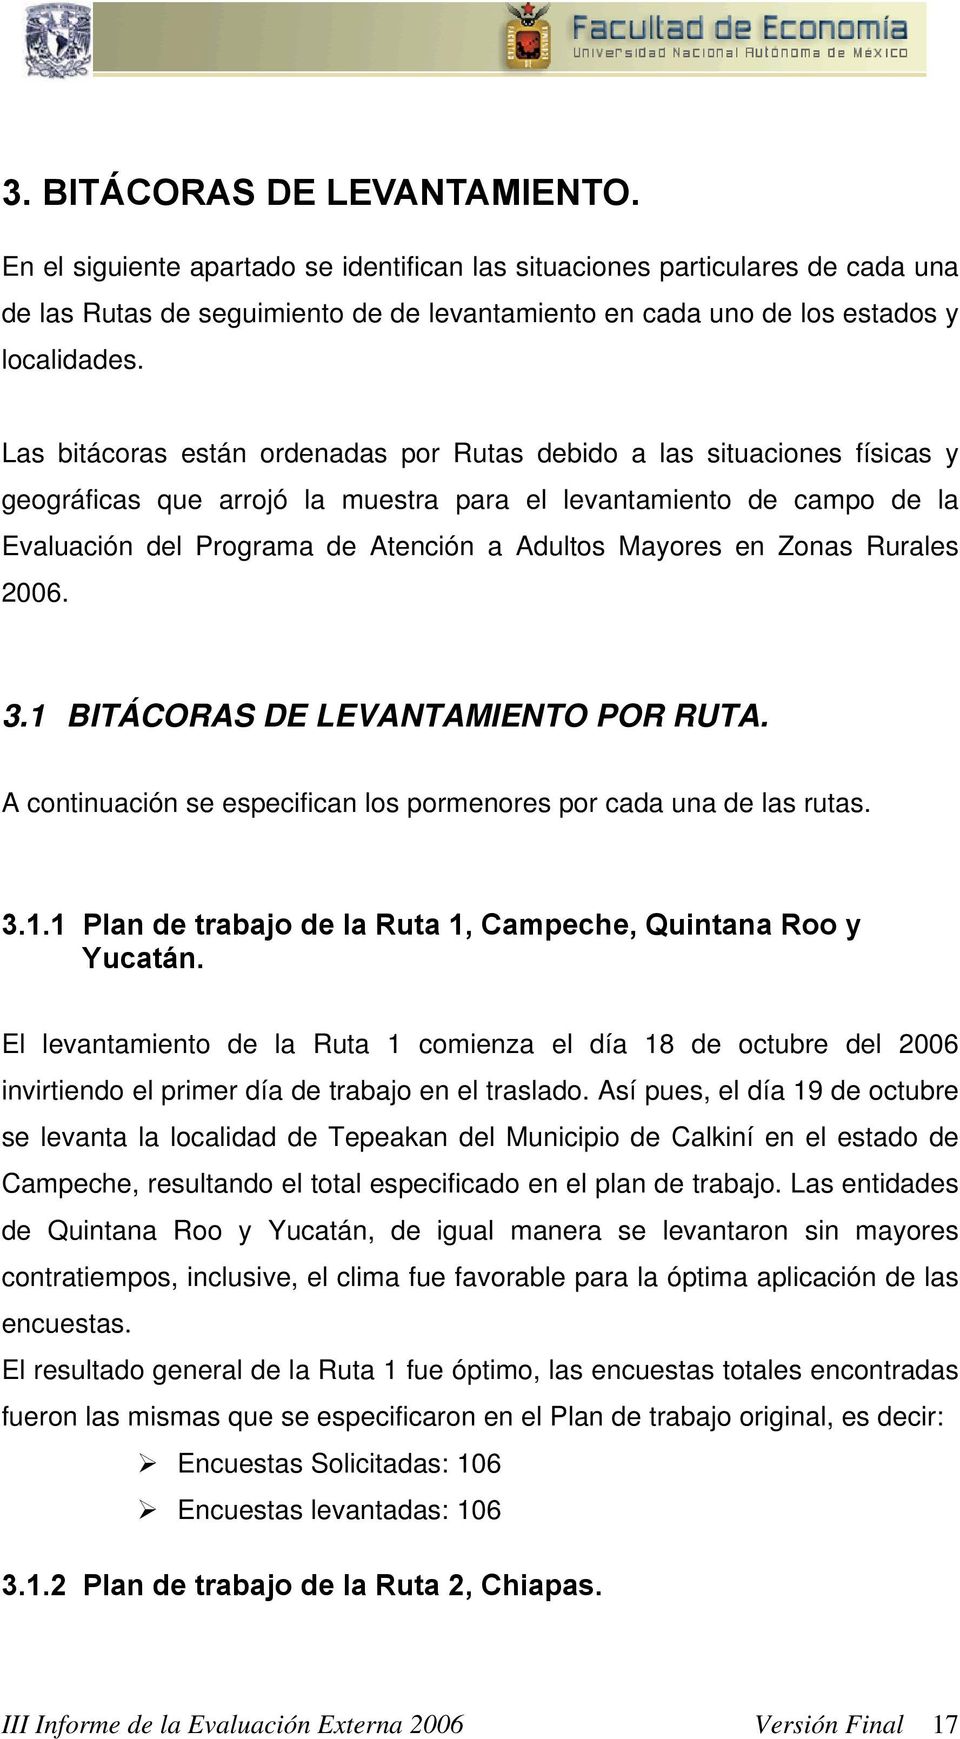 en Zonas Rurales 2006..1 BITÁCORAS DE LEVANTAMIENTO POR RUTA. A continuación se especifican los pormenores por cada una de las rutas..1.1 Plan de trabajo de la Ruta 1, Campeche, Quintana Roo y Yucatán.